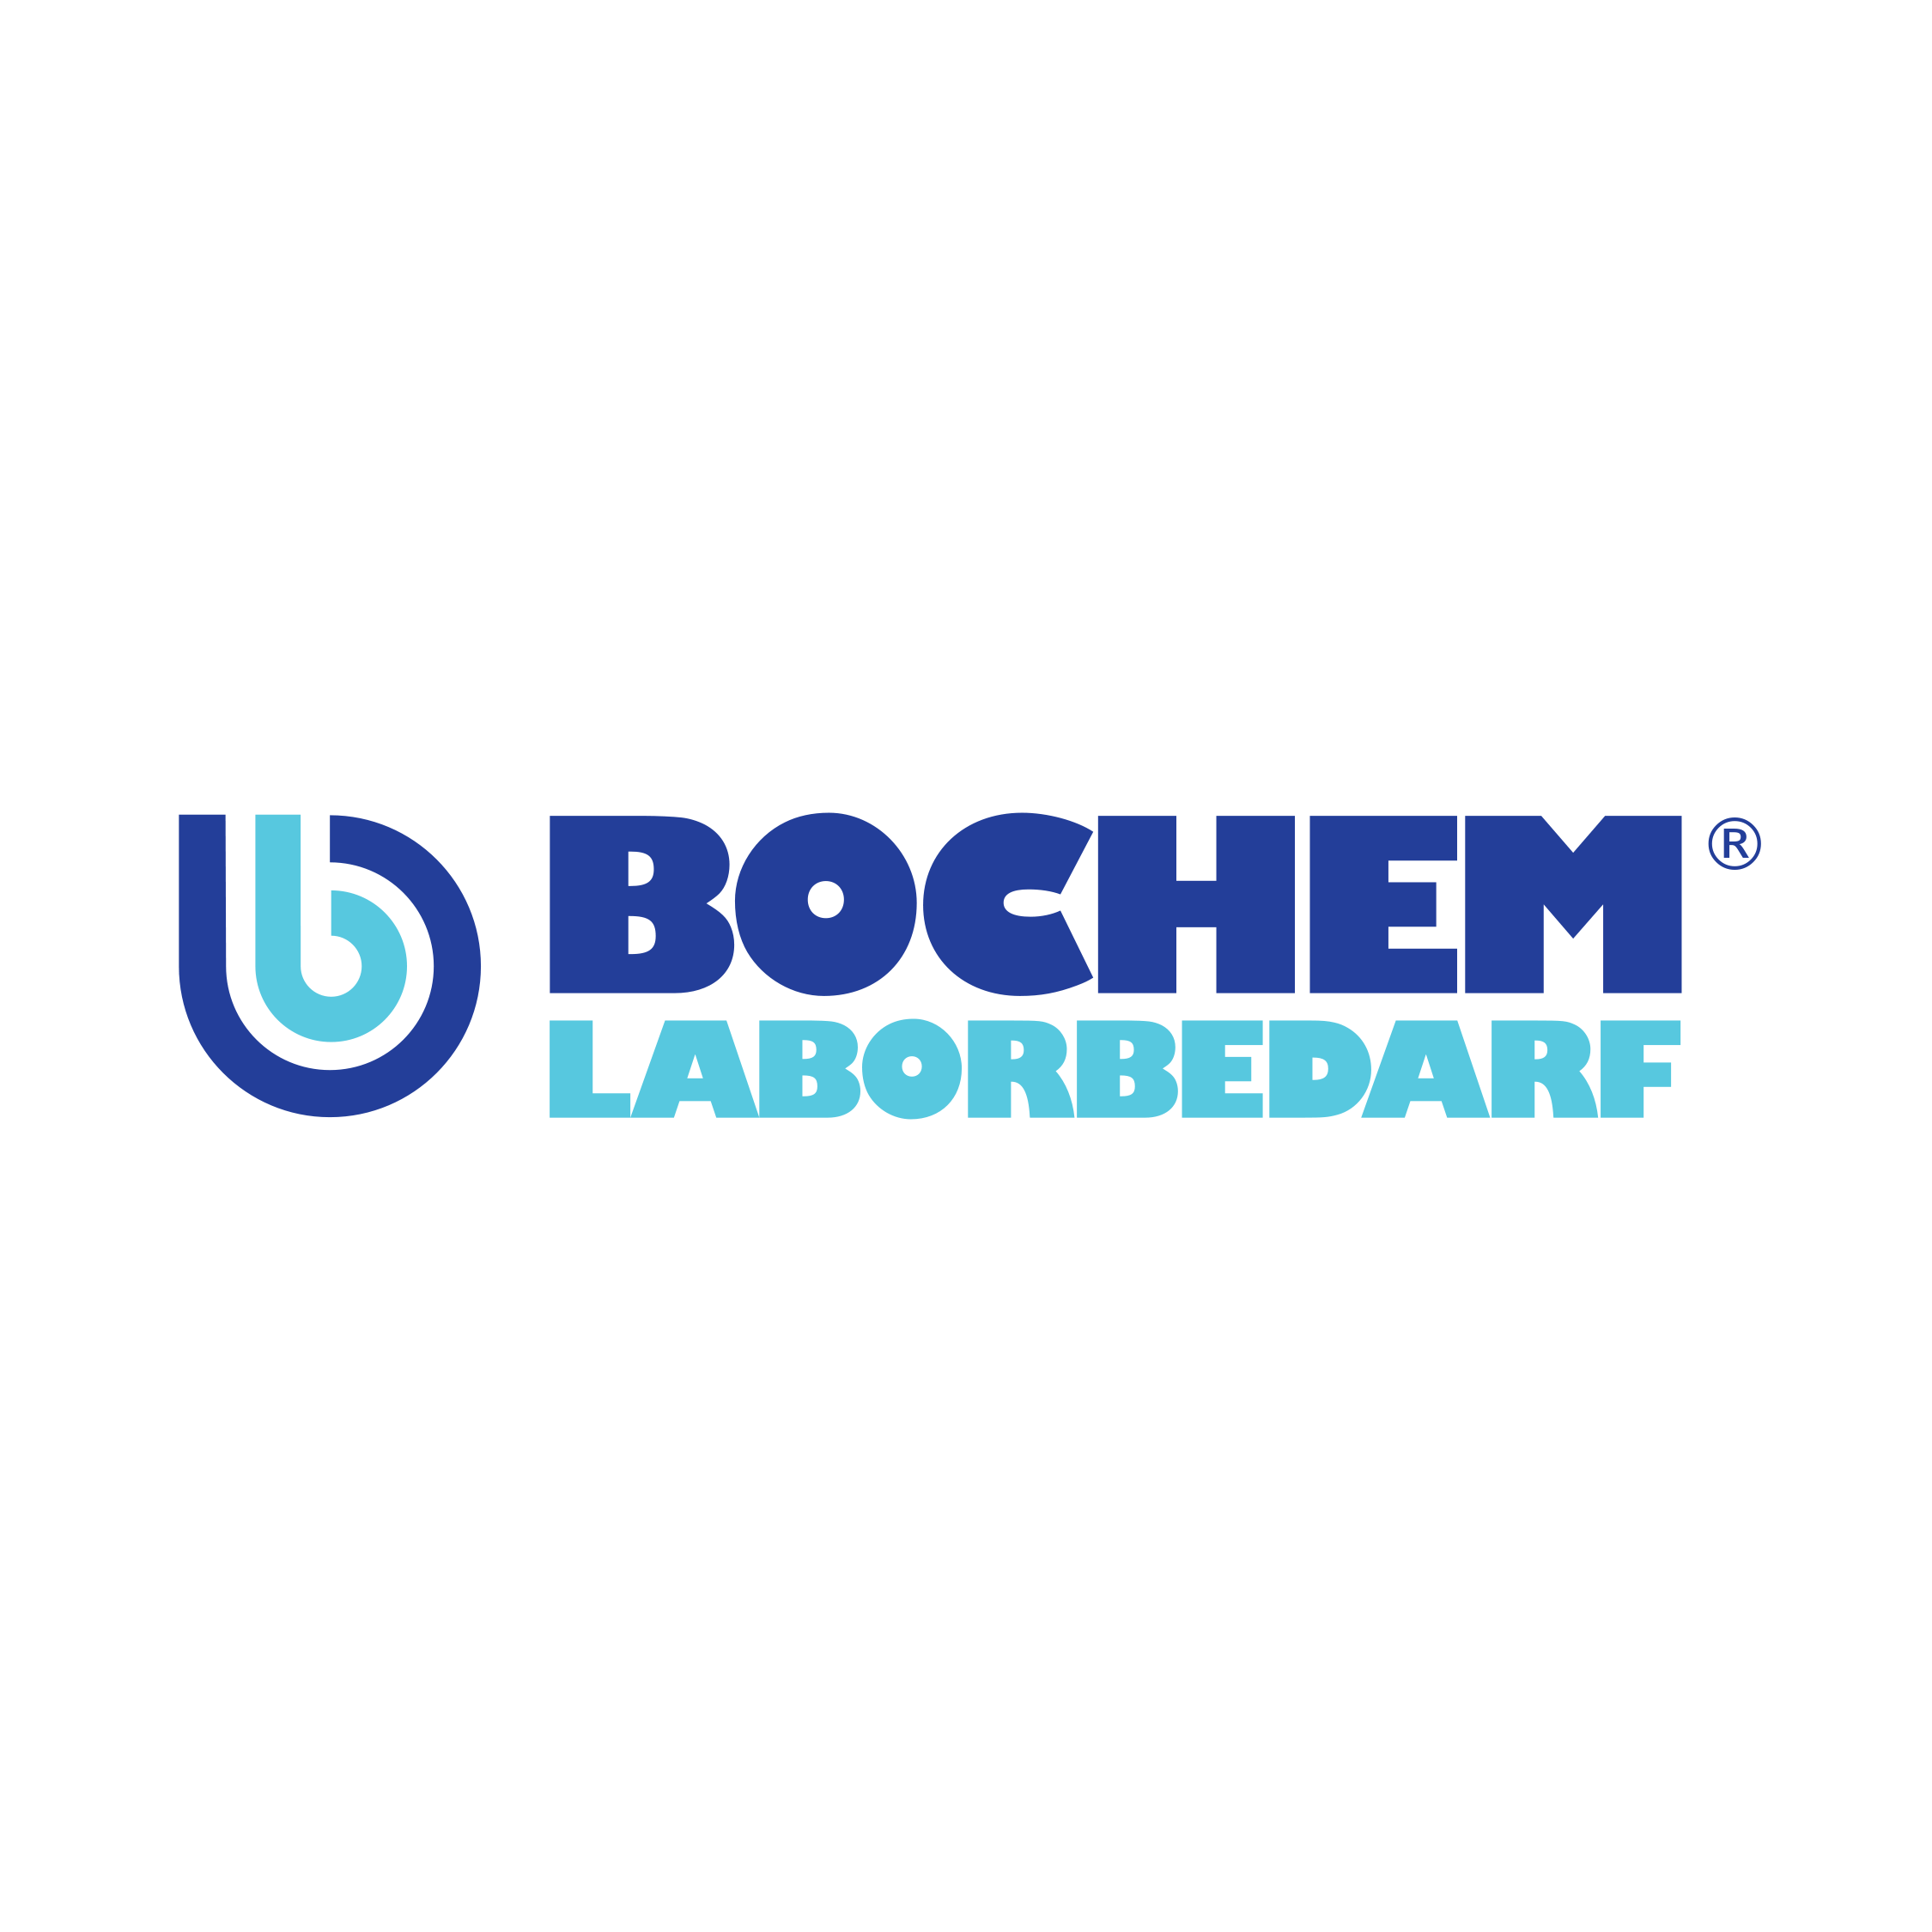 Bochem